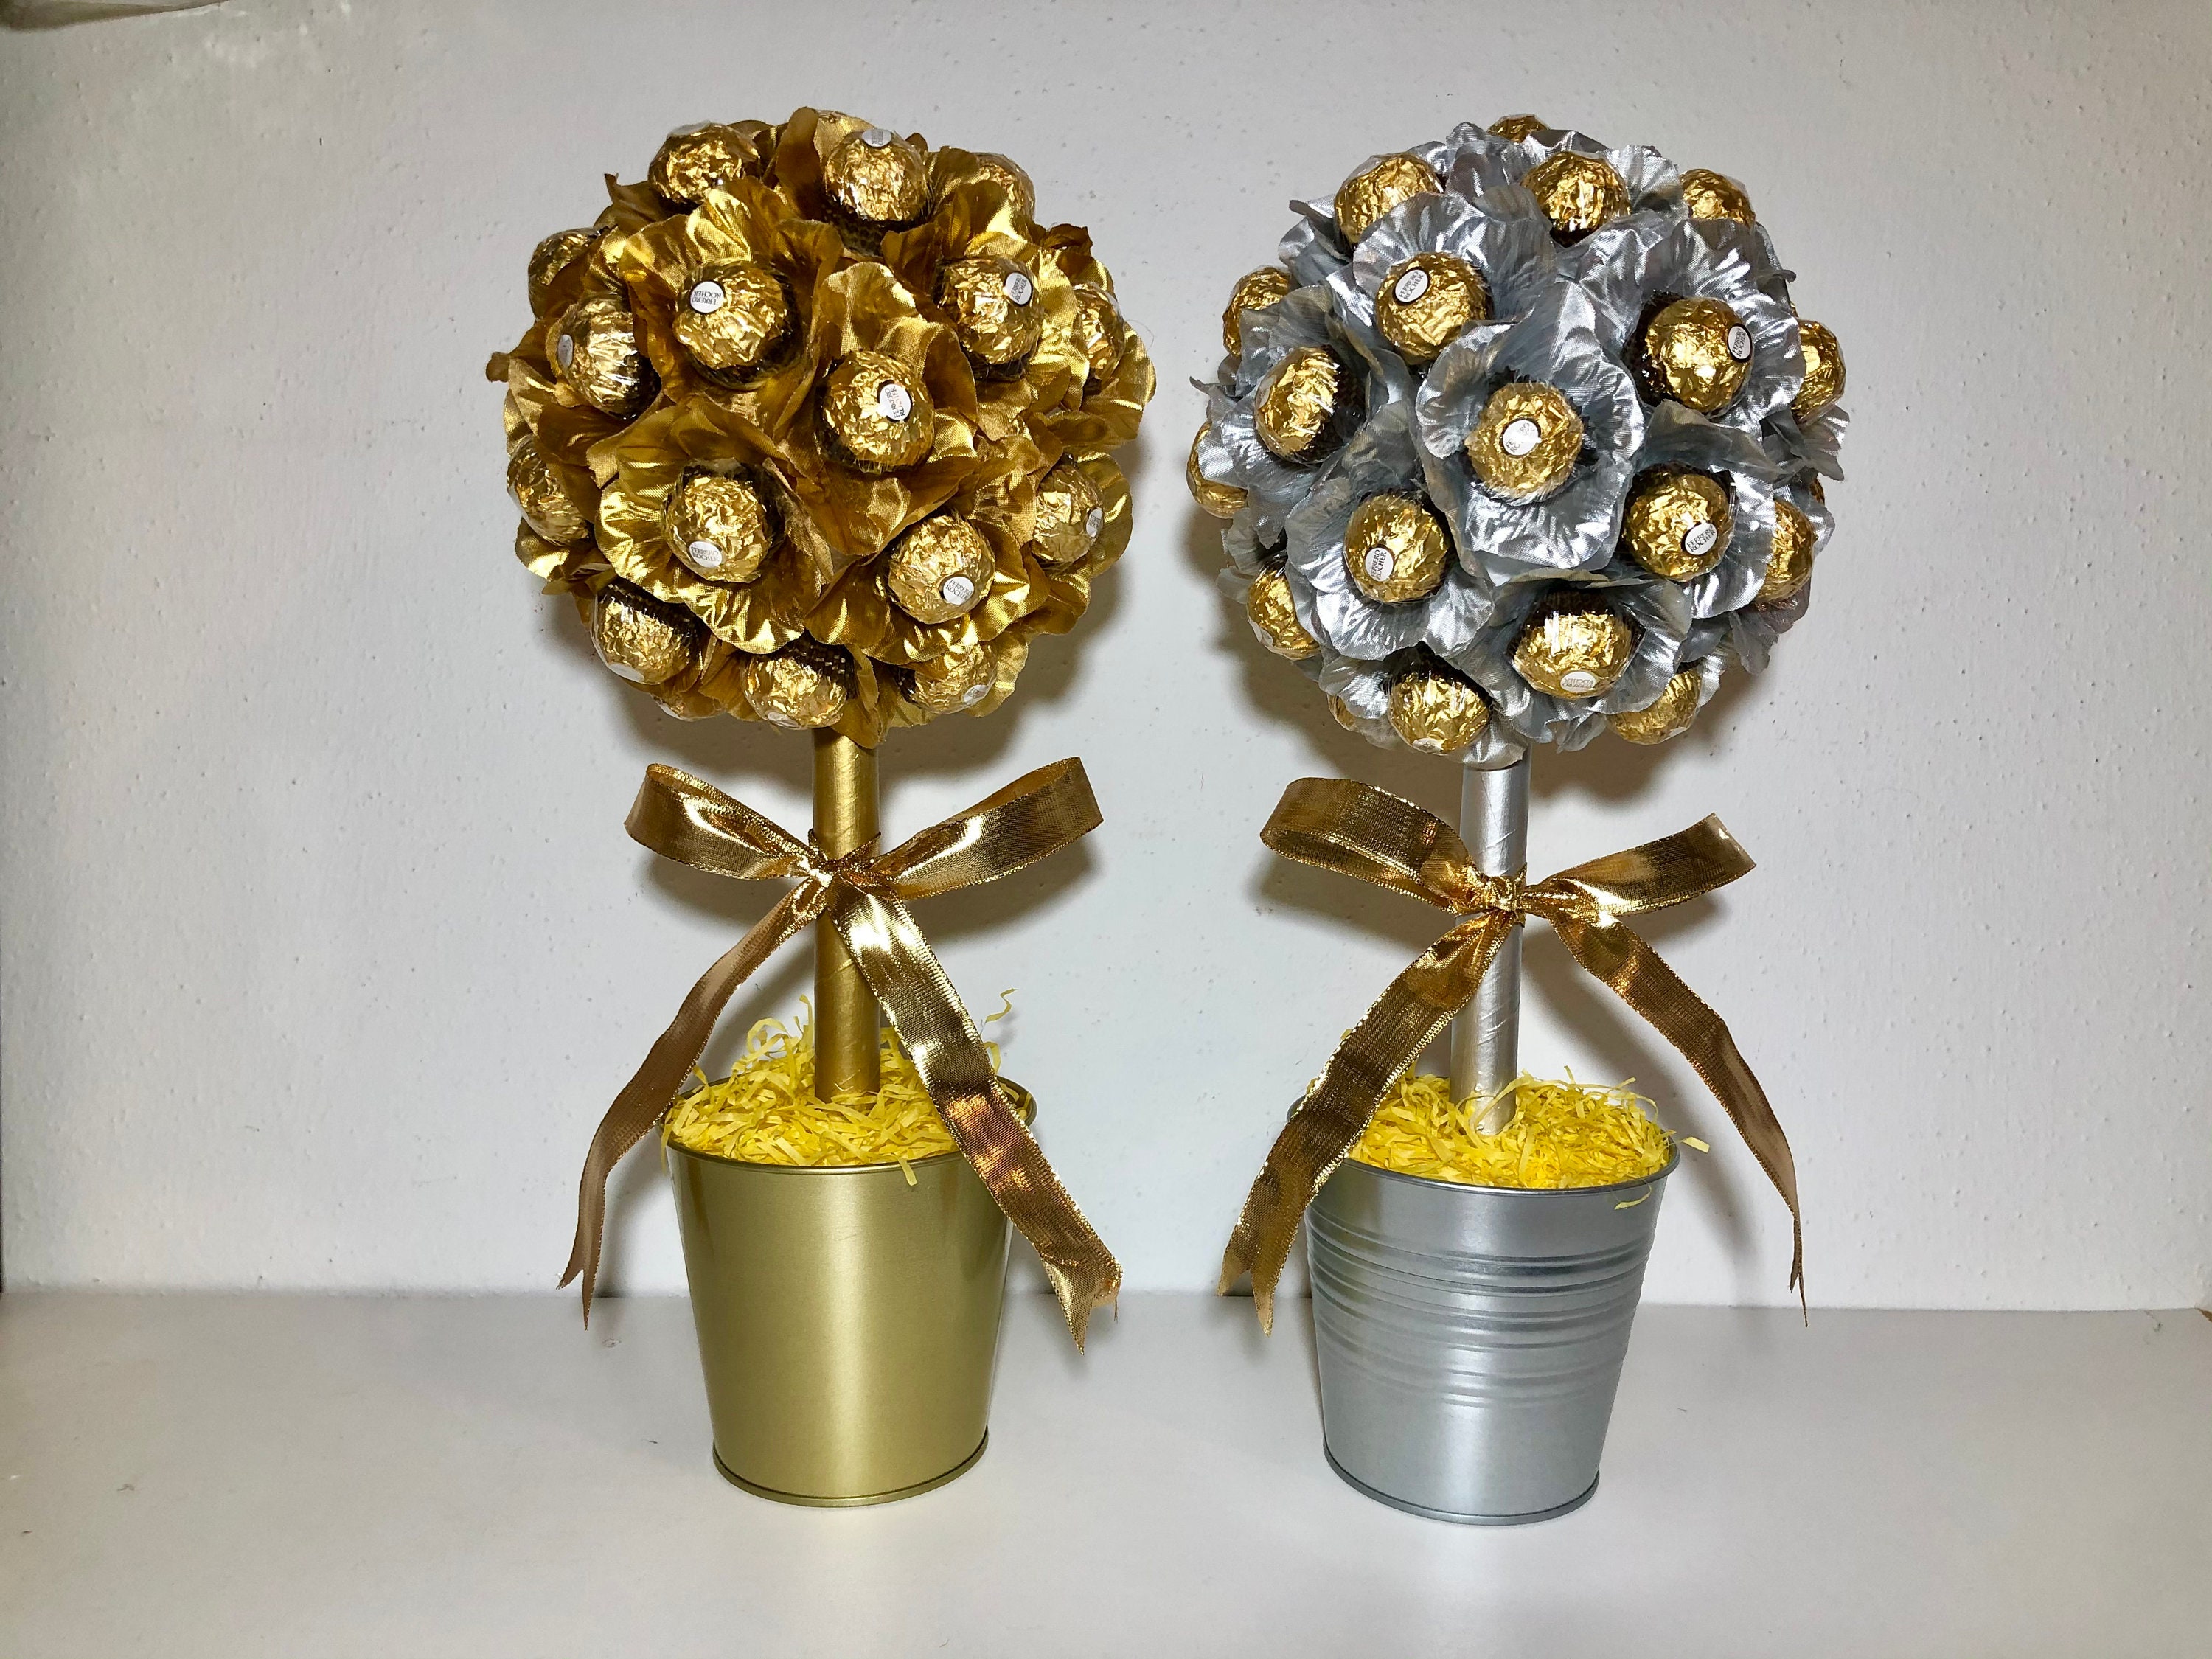 Arbre Ferrero Rocher & Carte personnalisée Bouquet de chocolats